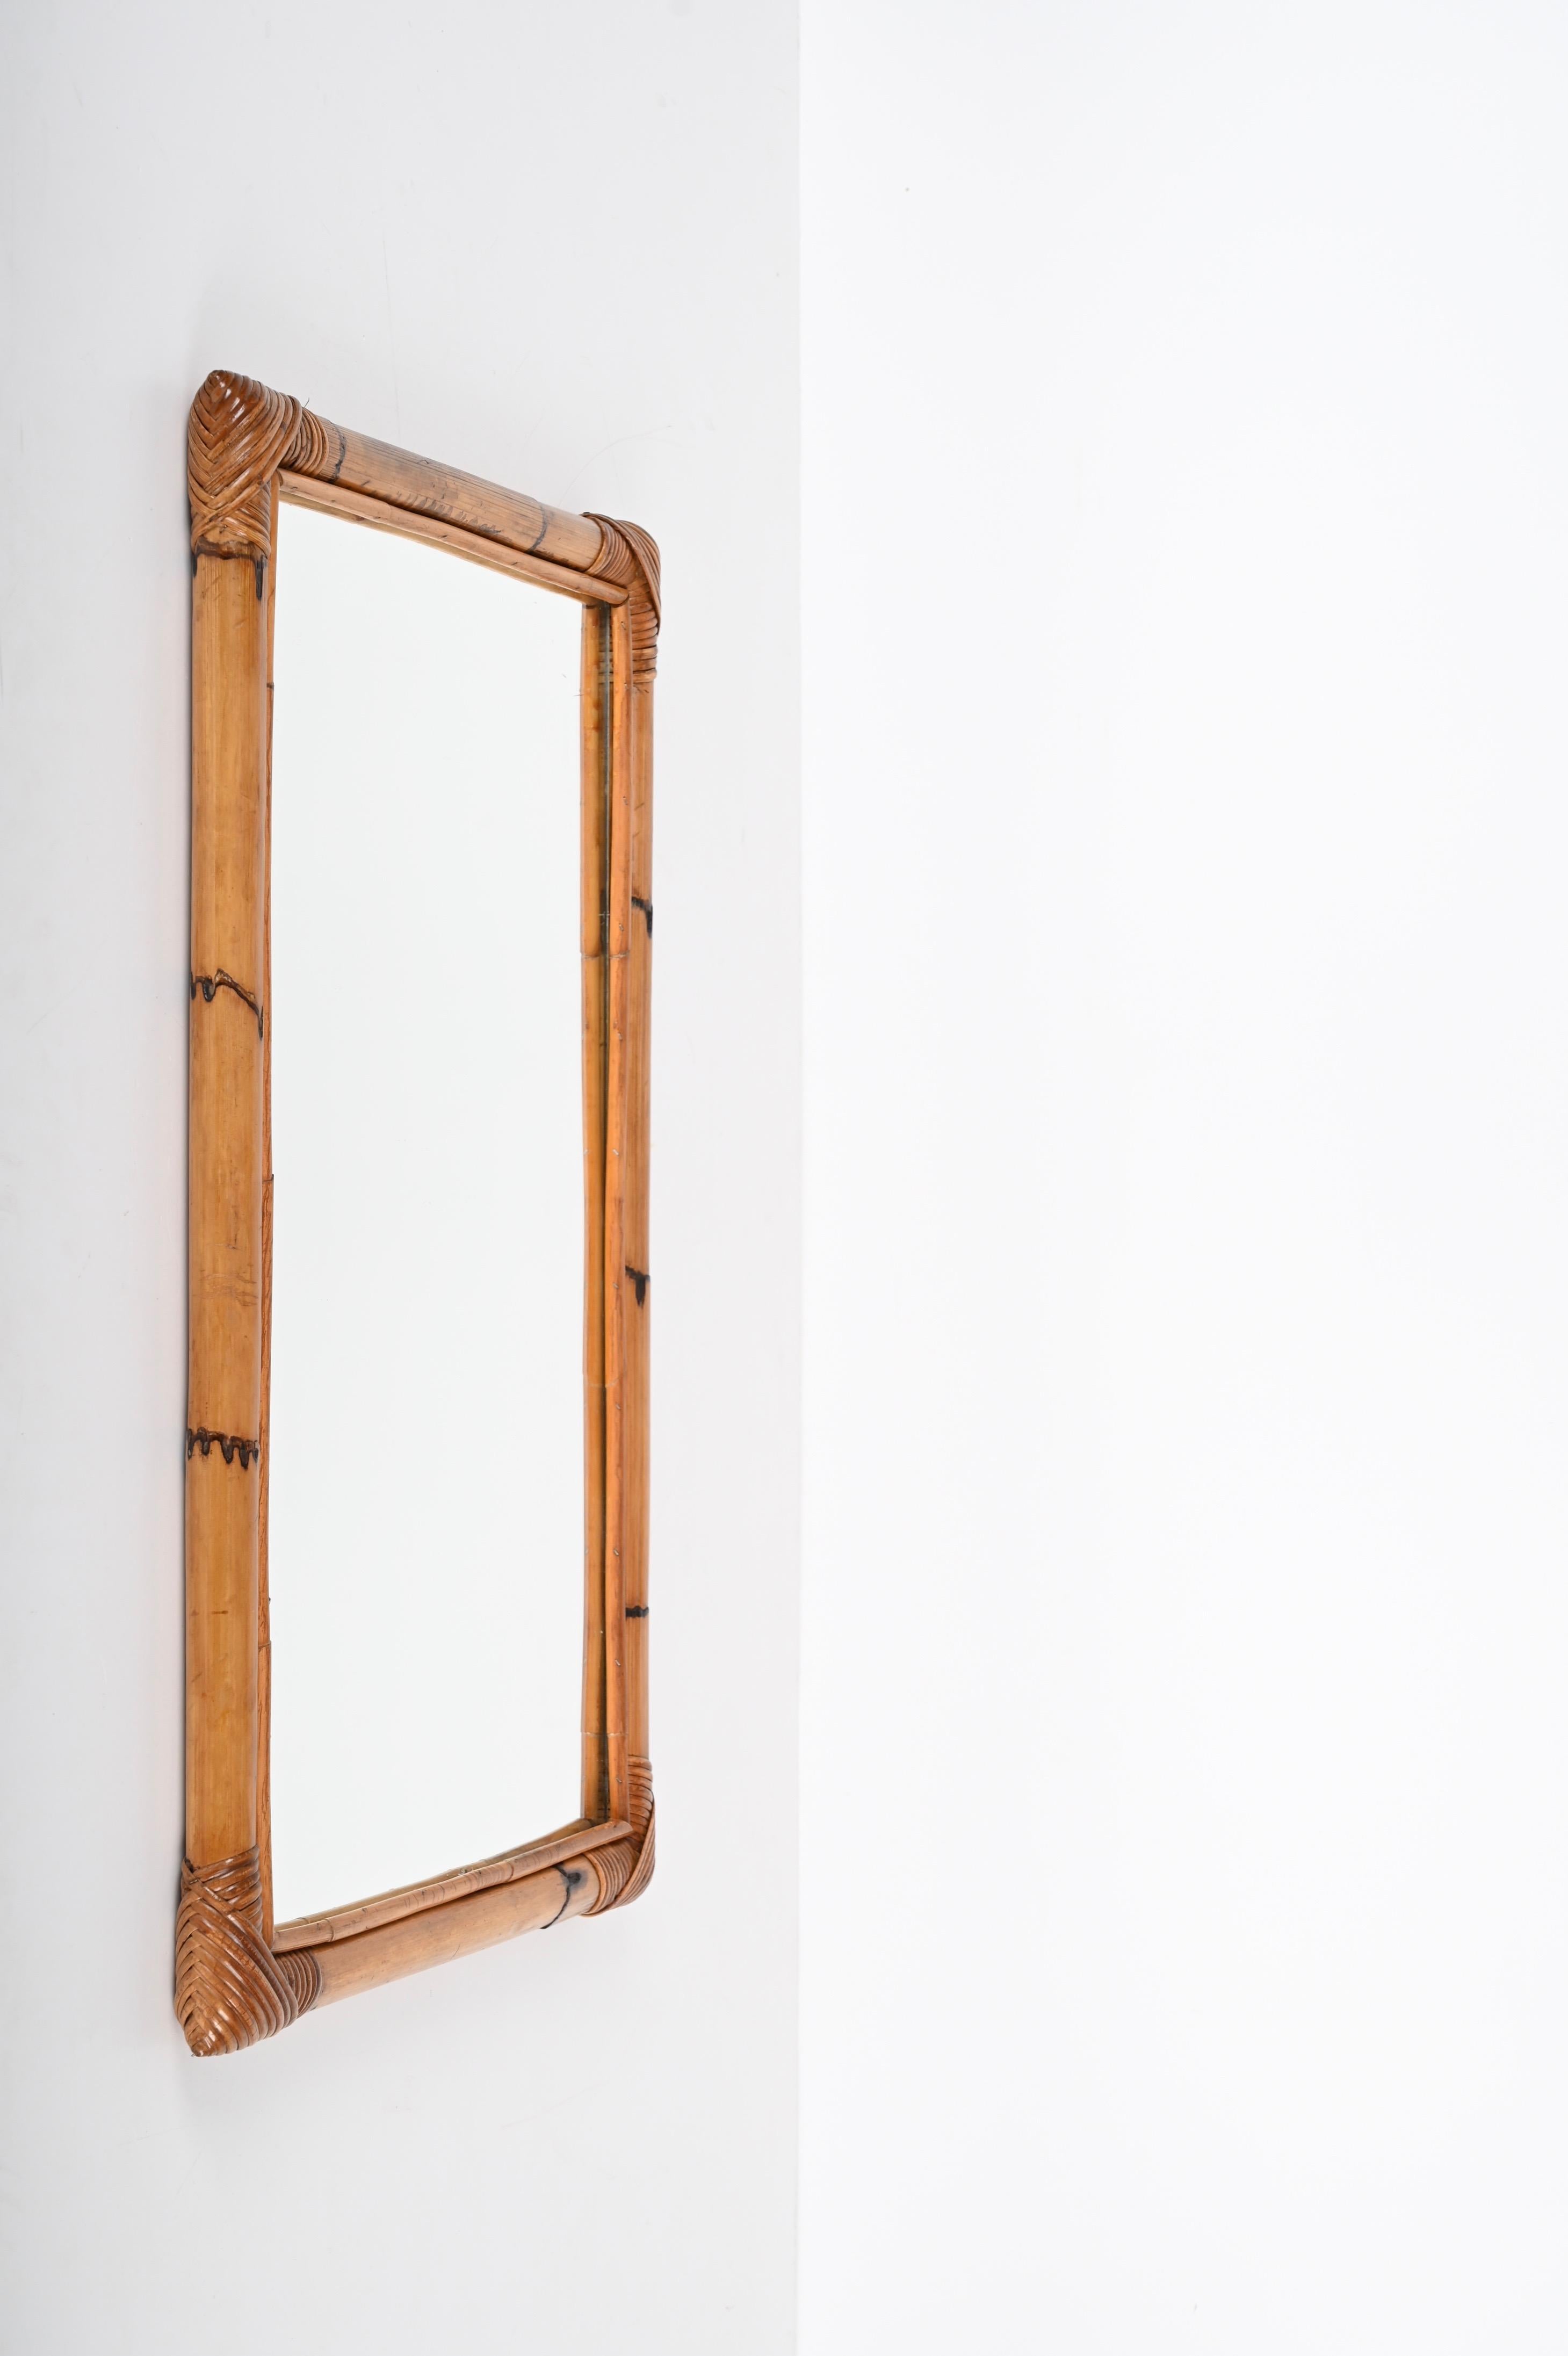 Merveilleux miroir rectangulaire du milieu du siècle dernier avec double cadre en bambou. Cet objet fantastique a été produit en Italie dans les années 1970.

Cette magnifique pièce est fantastique grâce à la façon dont les lignes droites du